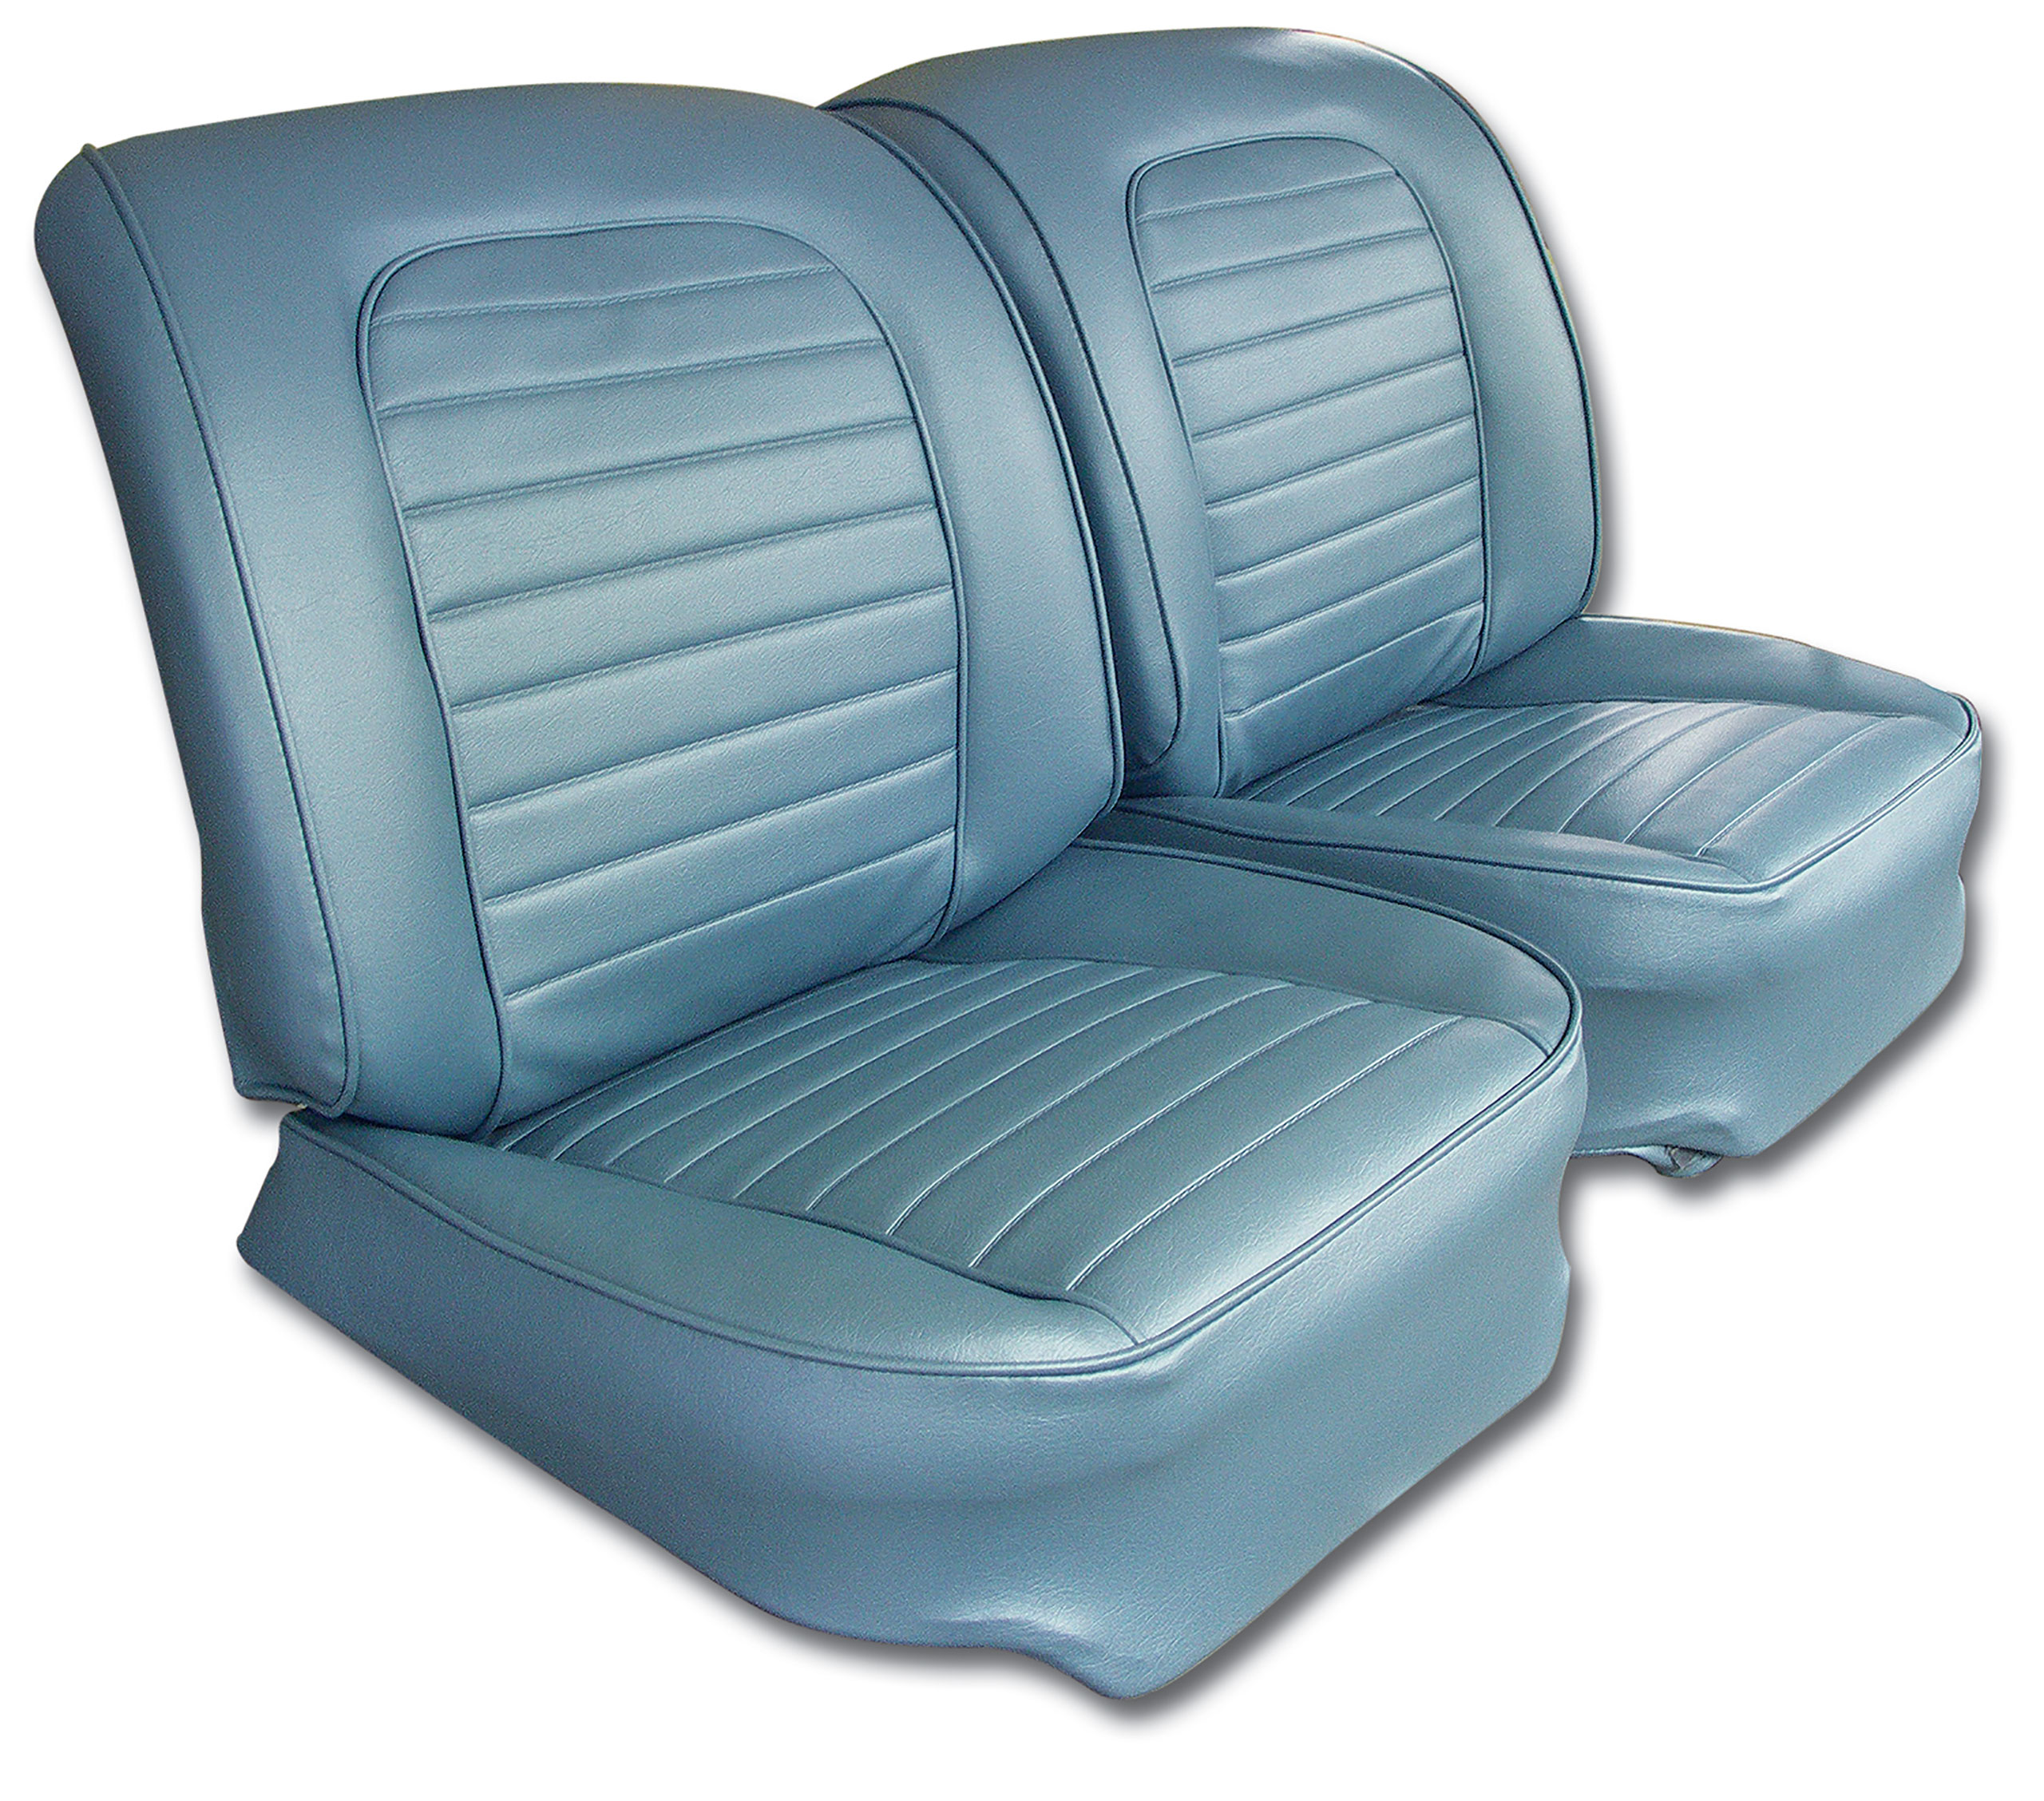 1959 Corvette C1 Vinyl Seat Covers- Blue CA-416707 